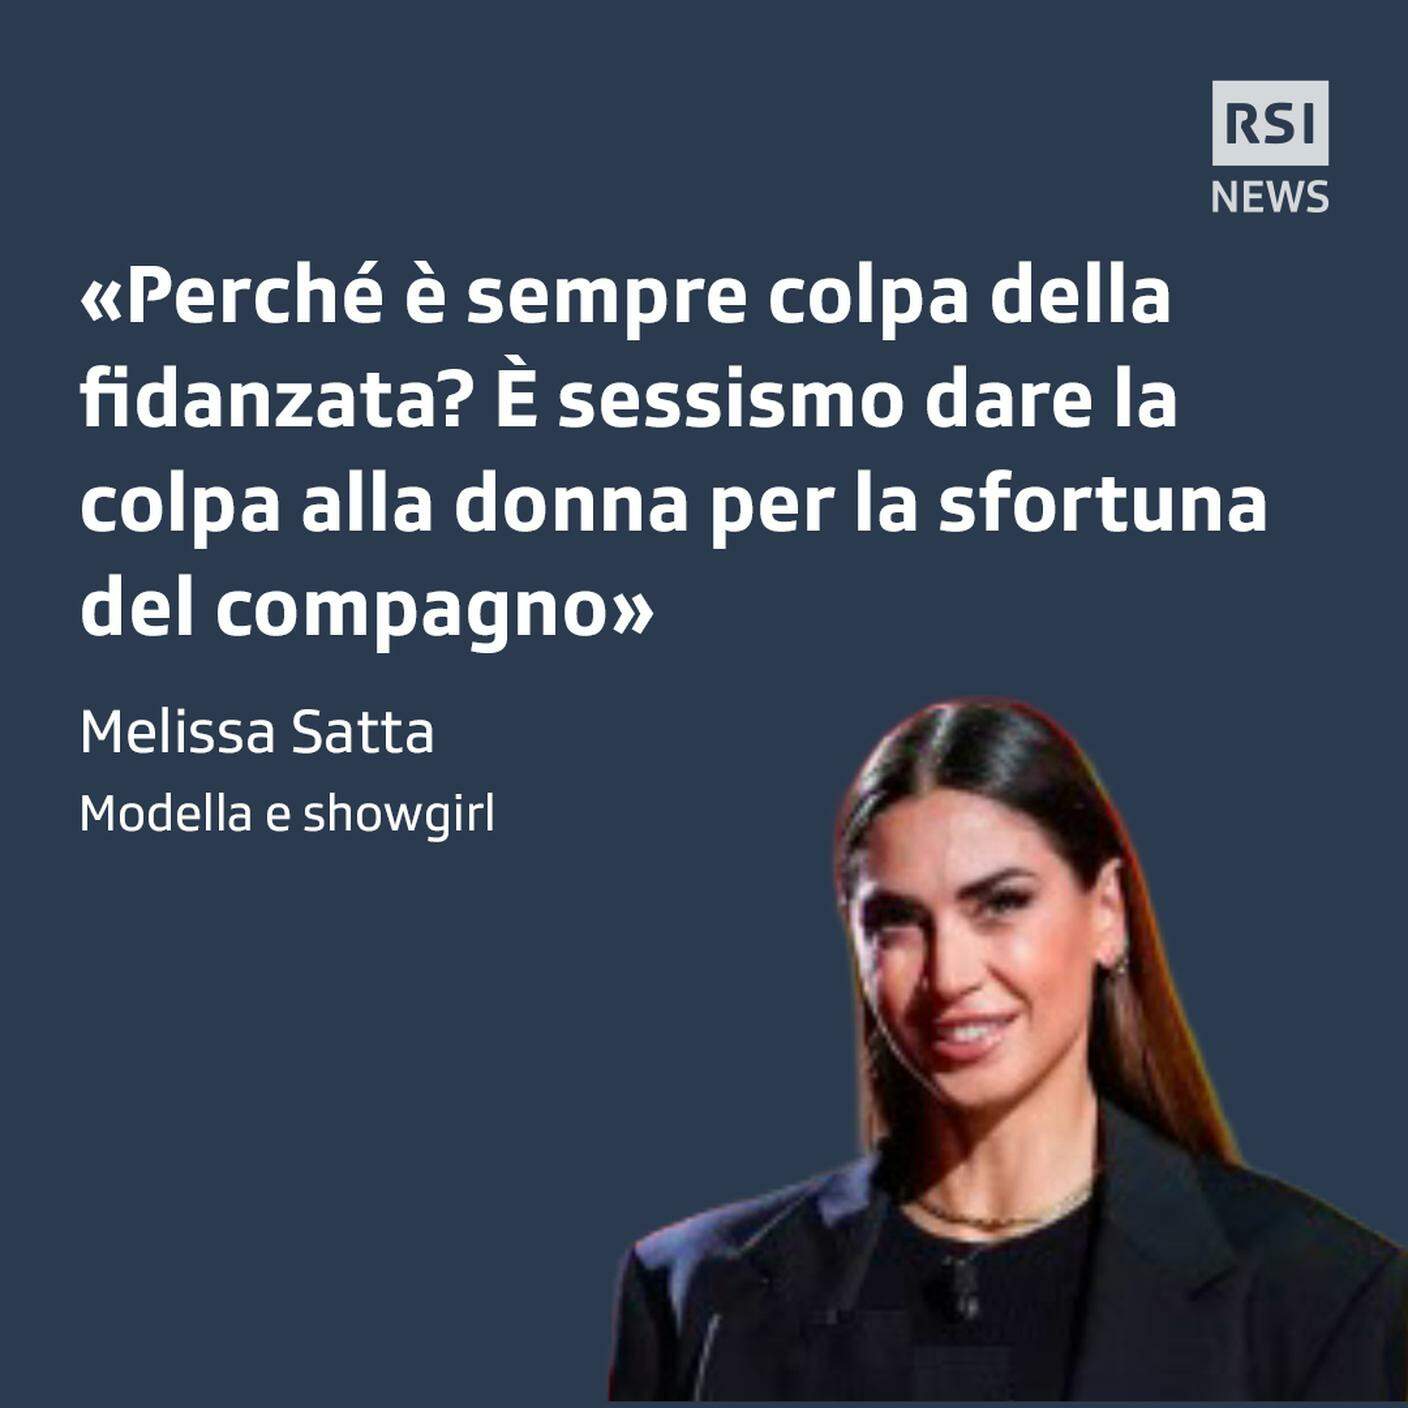 La modella italiana Melissa Satta è stata attaccata dal Corriere della Sera per la sua relazione con il tennista Matteo Berrettini